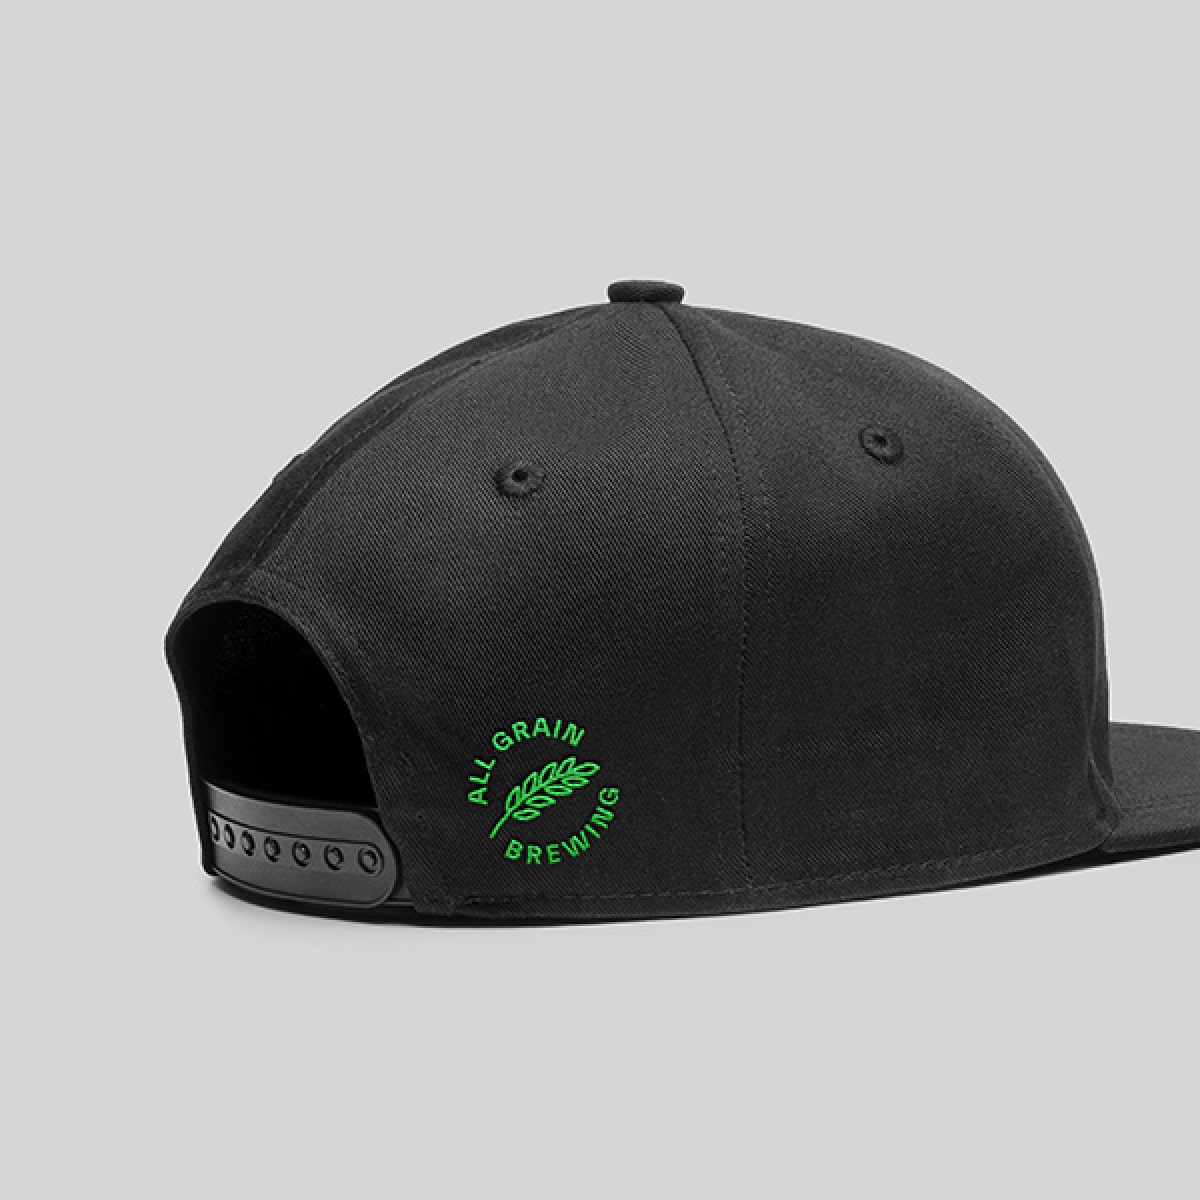 cap with branding